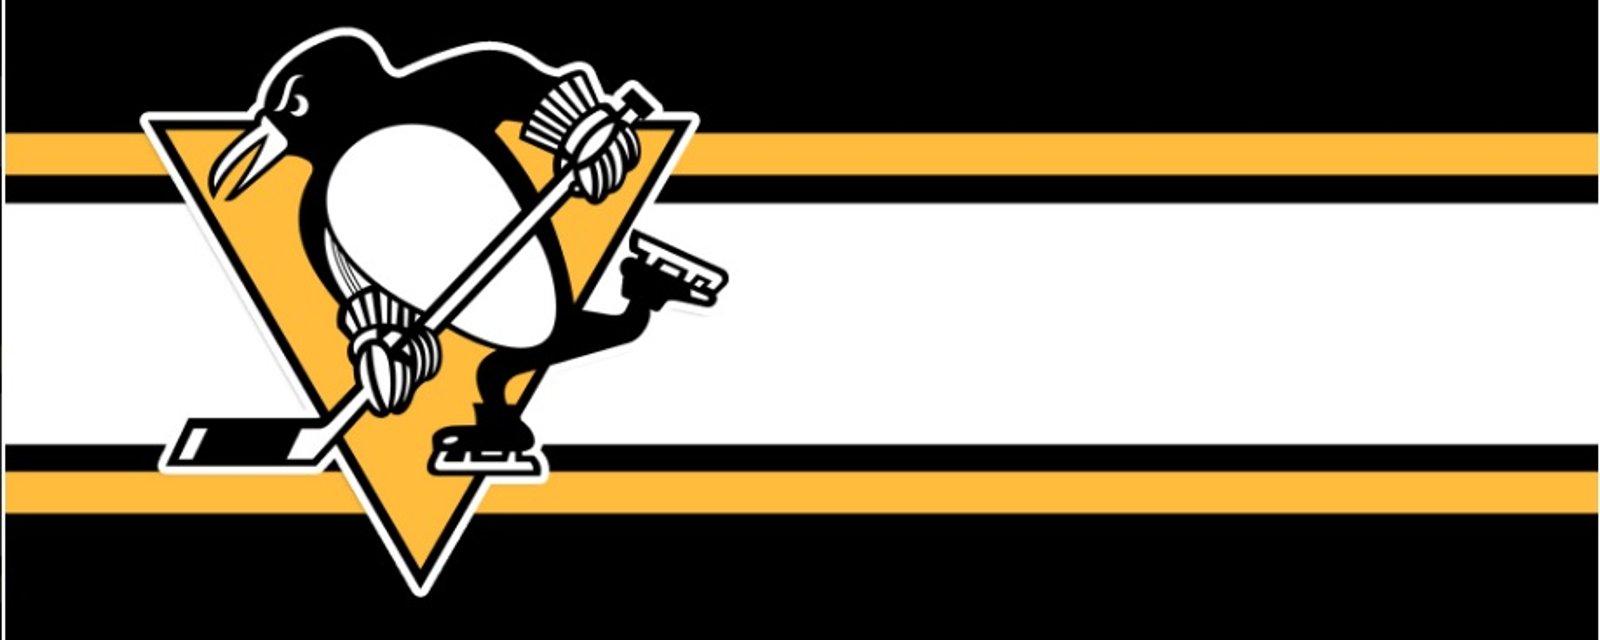 Les Penguins de Pittsburgh seraient sur le point de bouger!